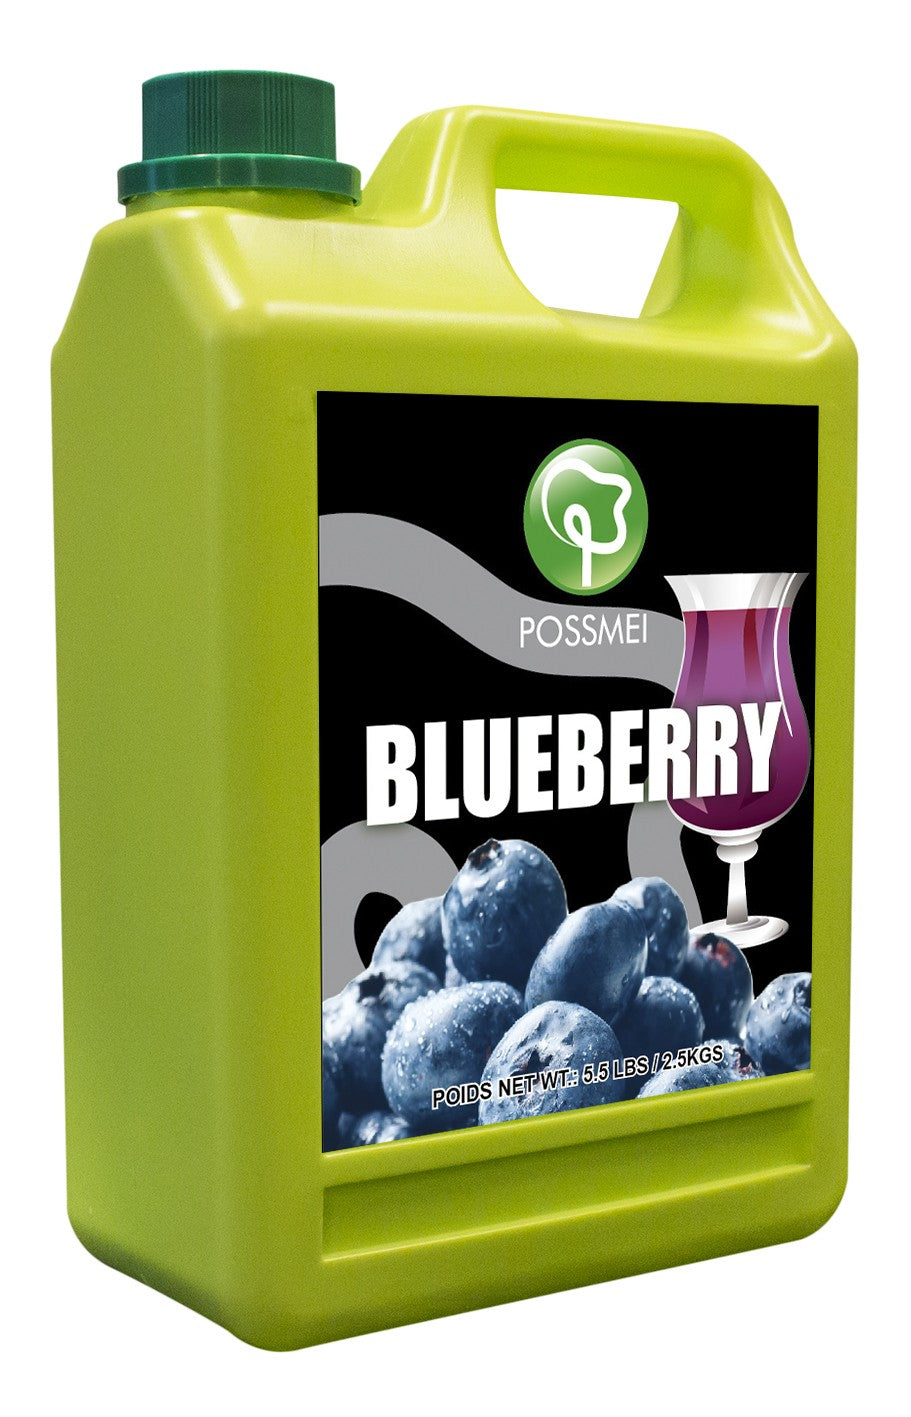 Possmei Blueberry Bubble Tea Juice